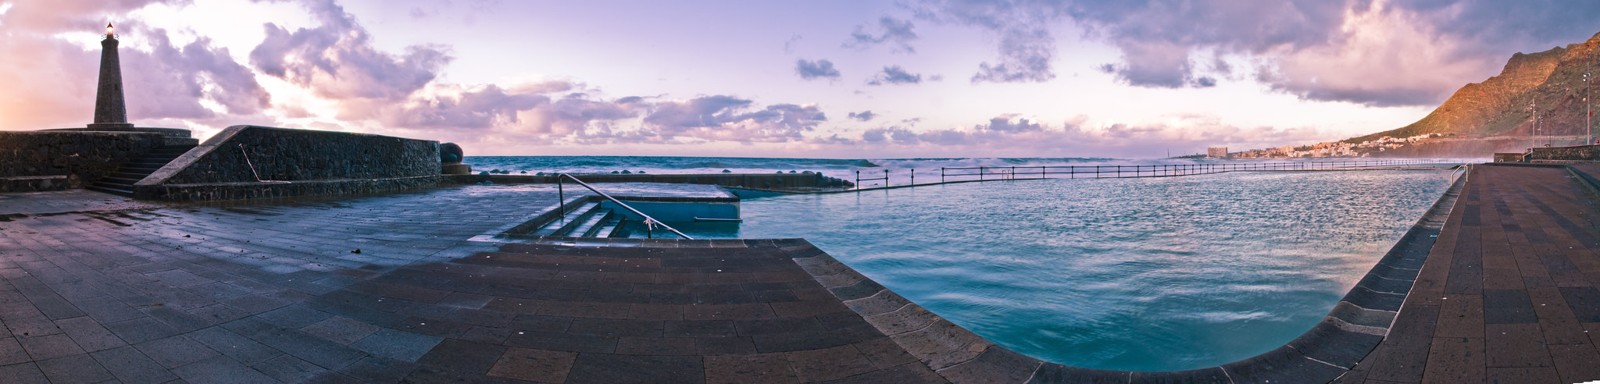 Panorámica piscina de Bajamar